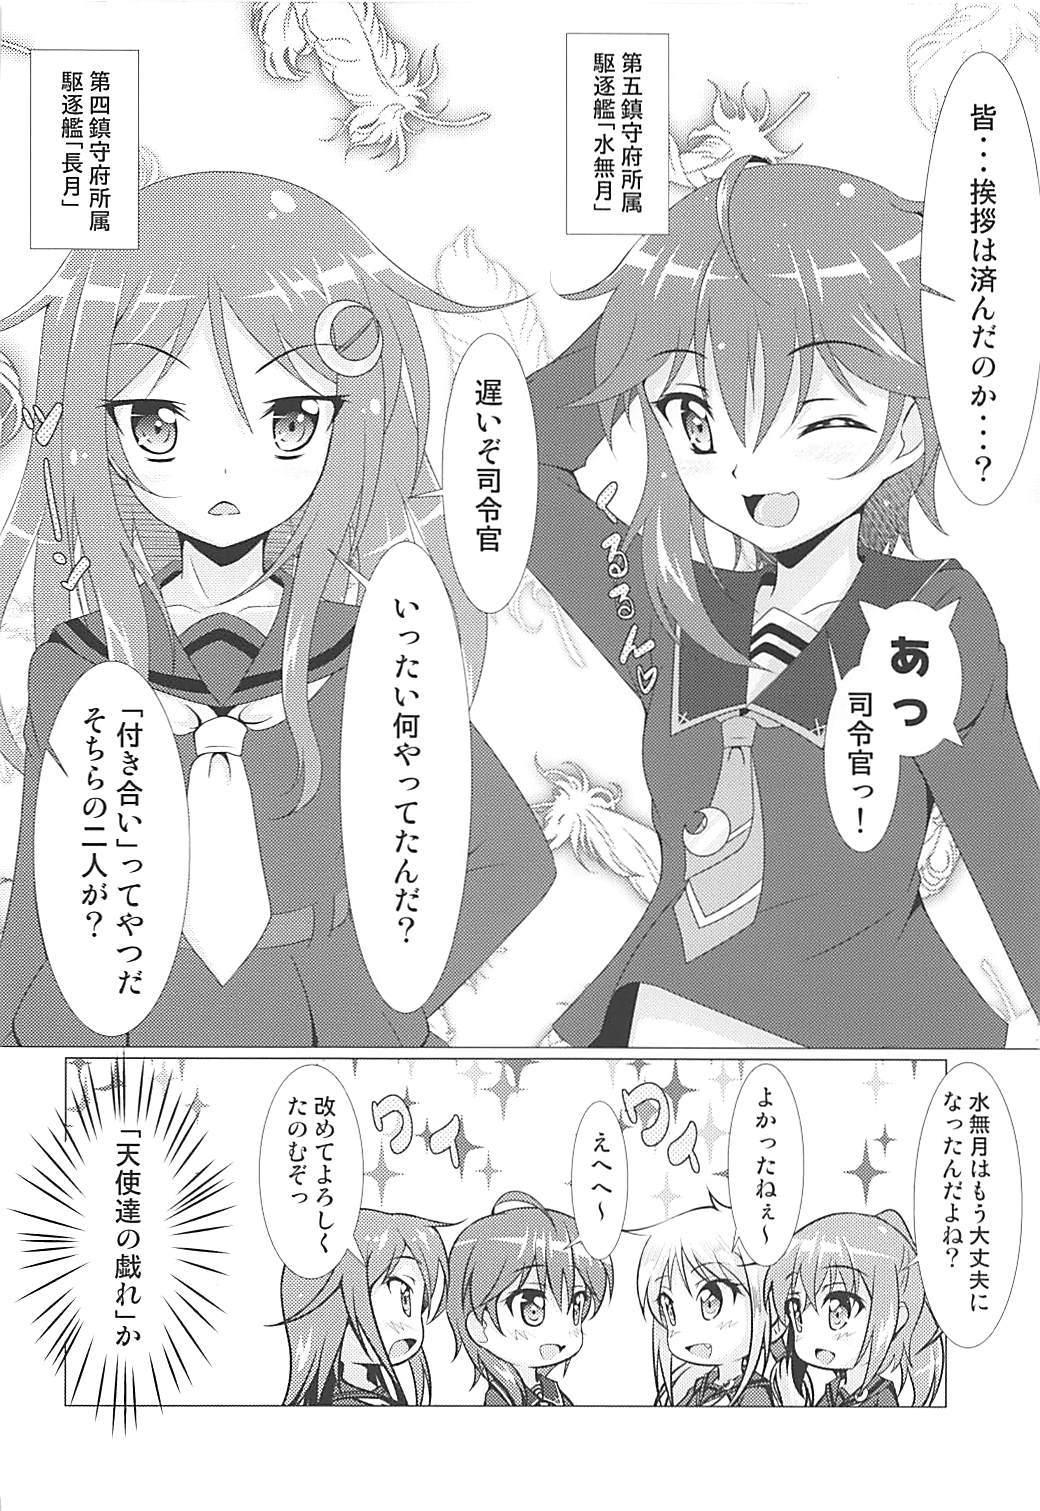 Horny 2+2=Minazuki/Nagatsuki #01 - Kantai collection Kiss - Page 7